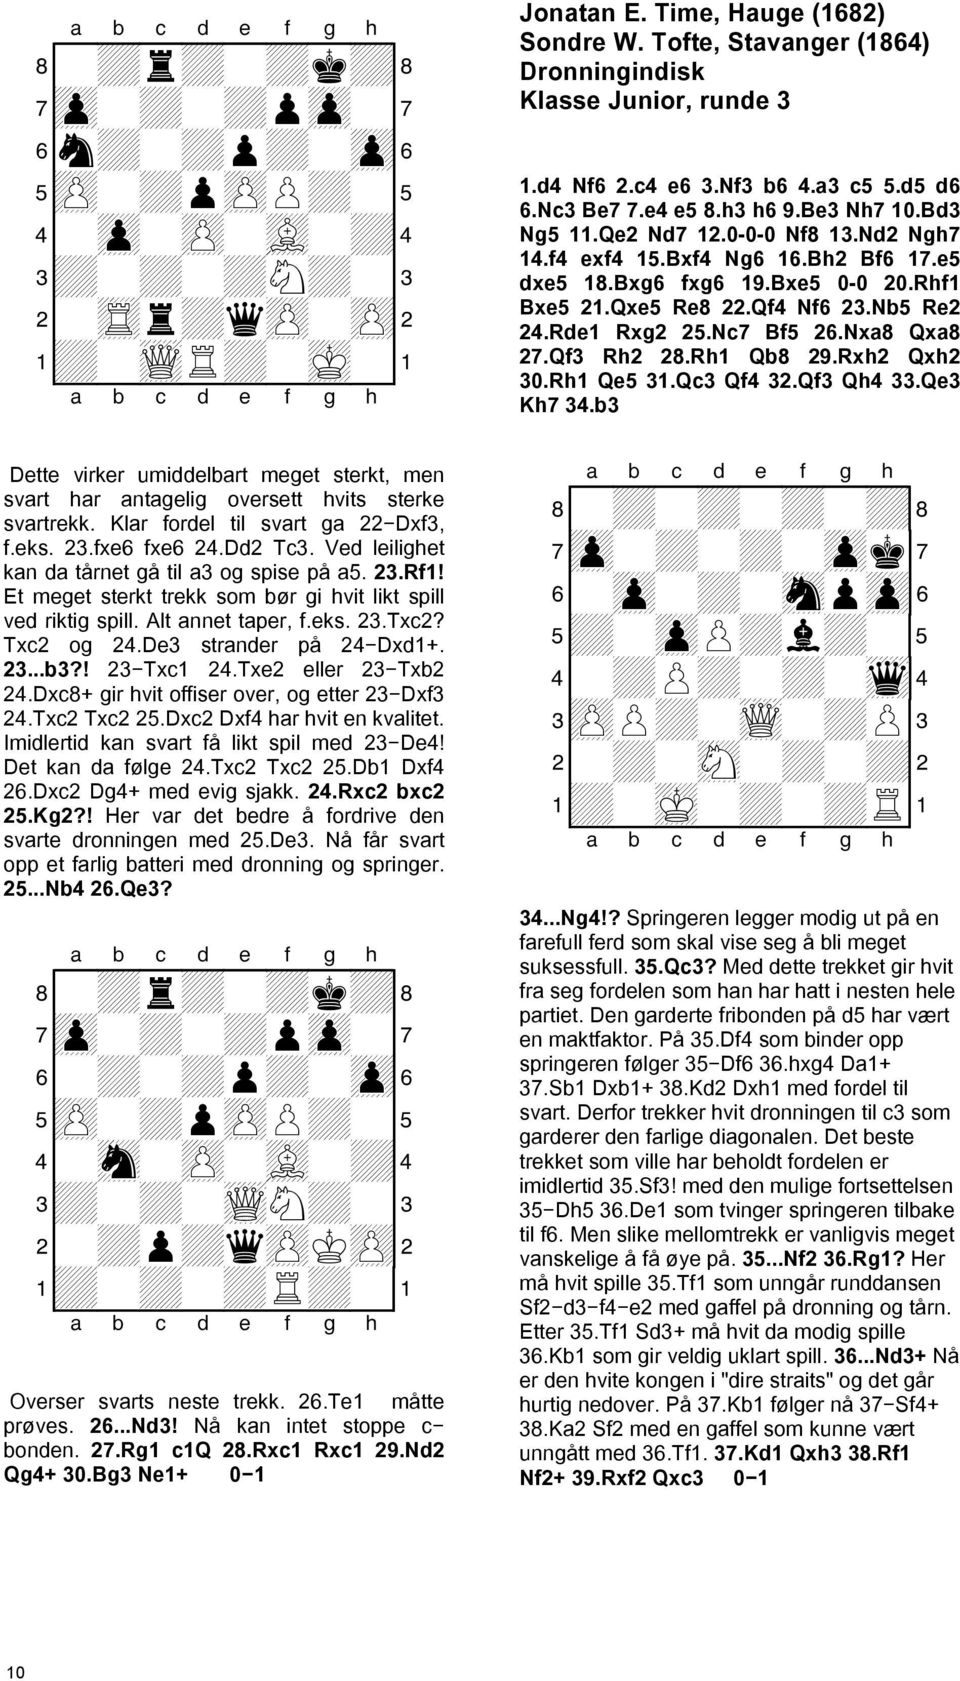 Ved leilighet kan da tårnet gå til a3 og spise på a5. 23.Rf1! Et meget sterkt trekk som bør gi hvit likt spill ved riktig spill. Alt annet taper, f.eks. 23.Txc2? Txc2 og 24.De3 strander på 24 Dxd1+.